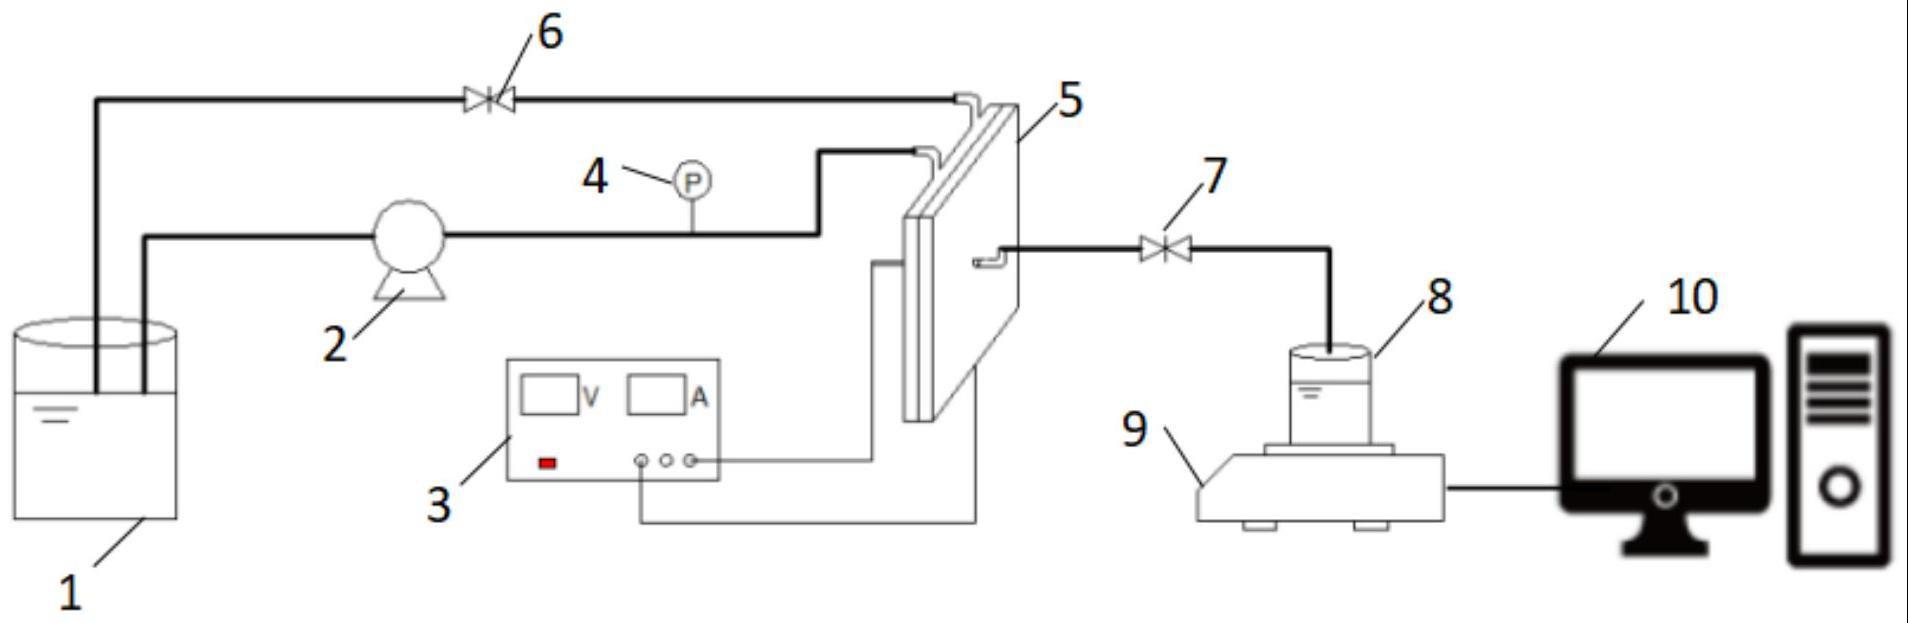 纳滤膜组件及直流电场耦合纳滤膜分离系统